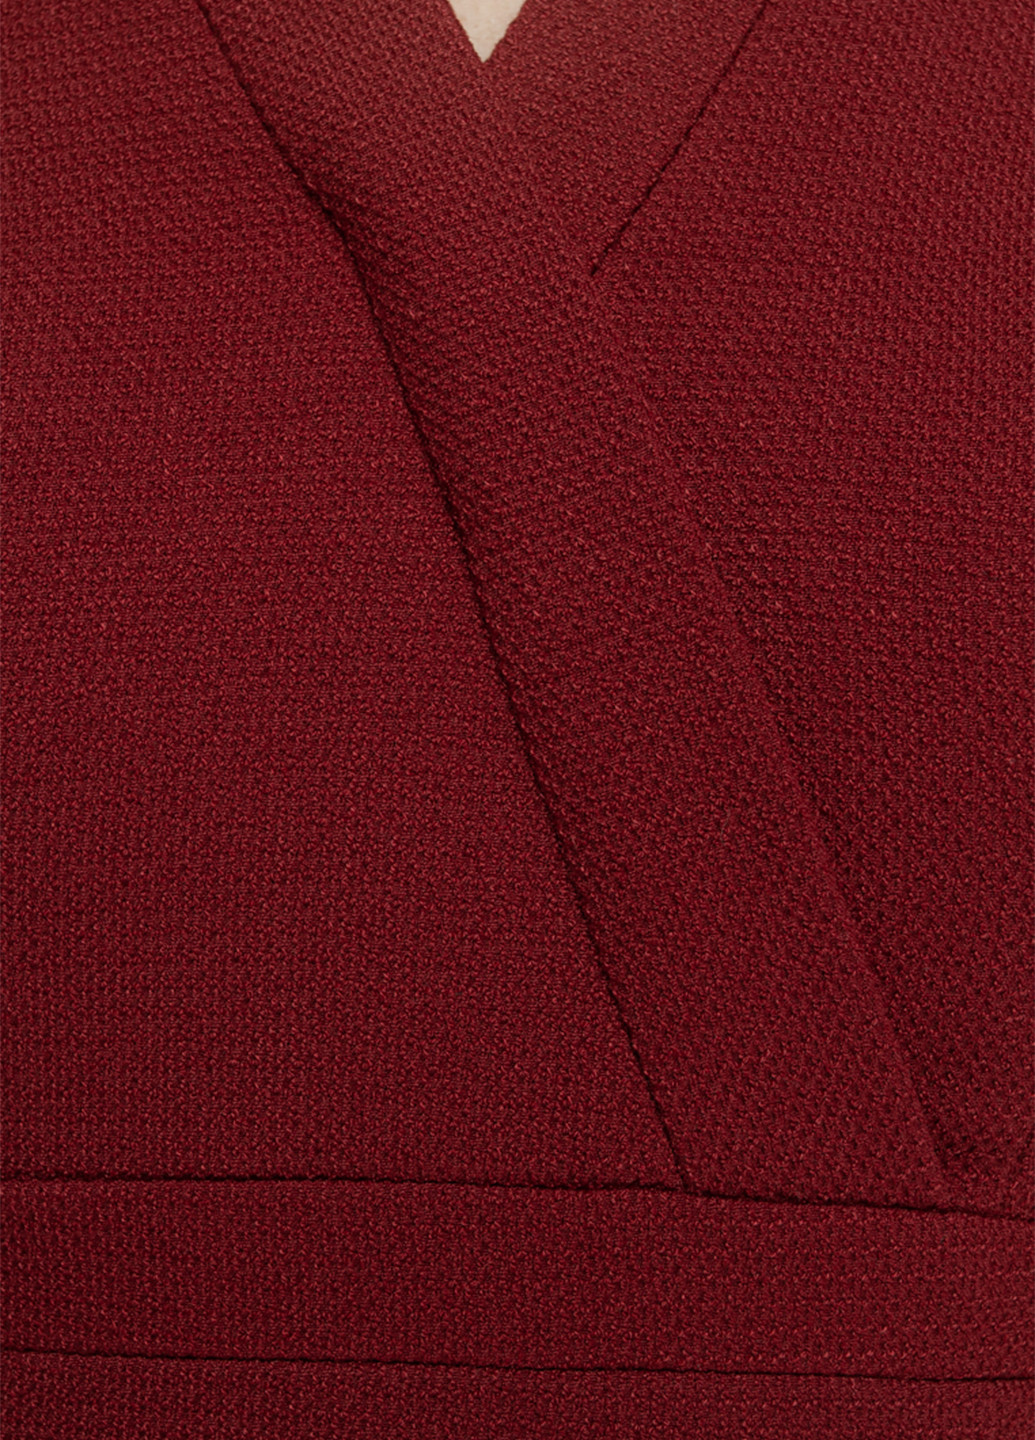 Костюм (жакет, юбка) BGL Комплект (жакет и юбка) юбочный однотонный терракотовый деловой хлопок